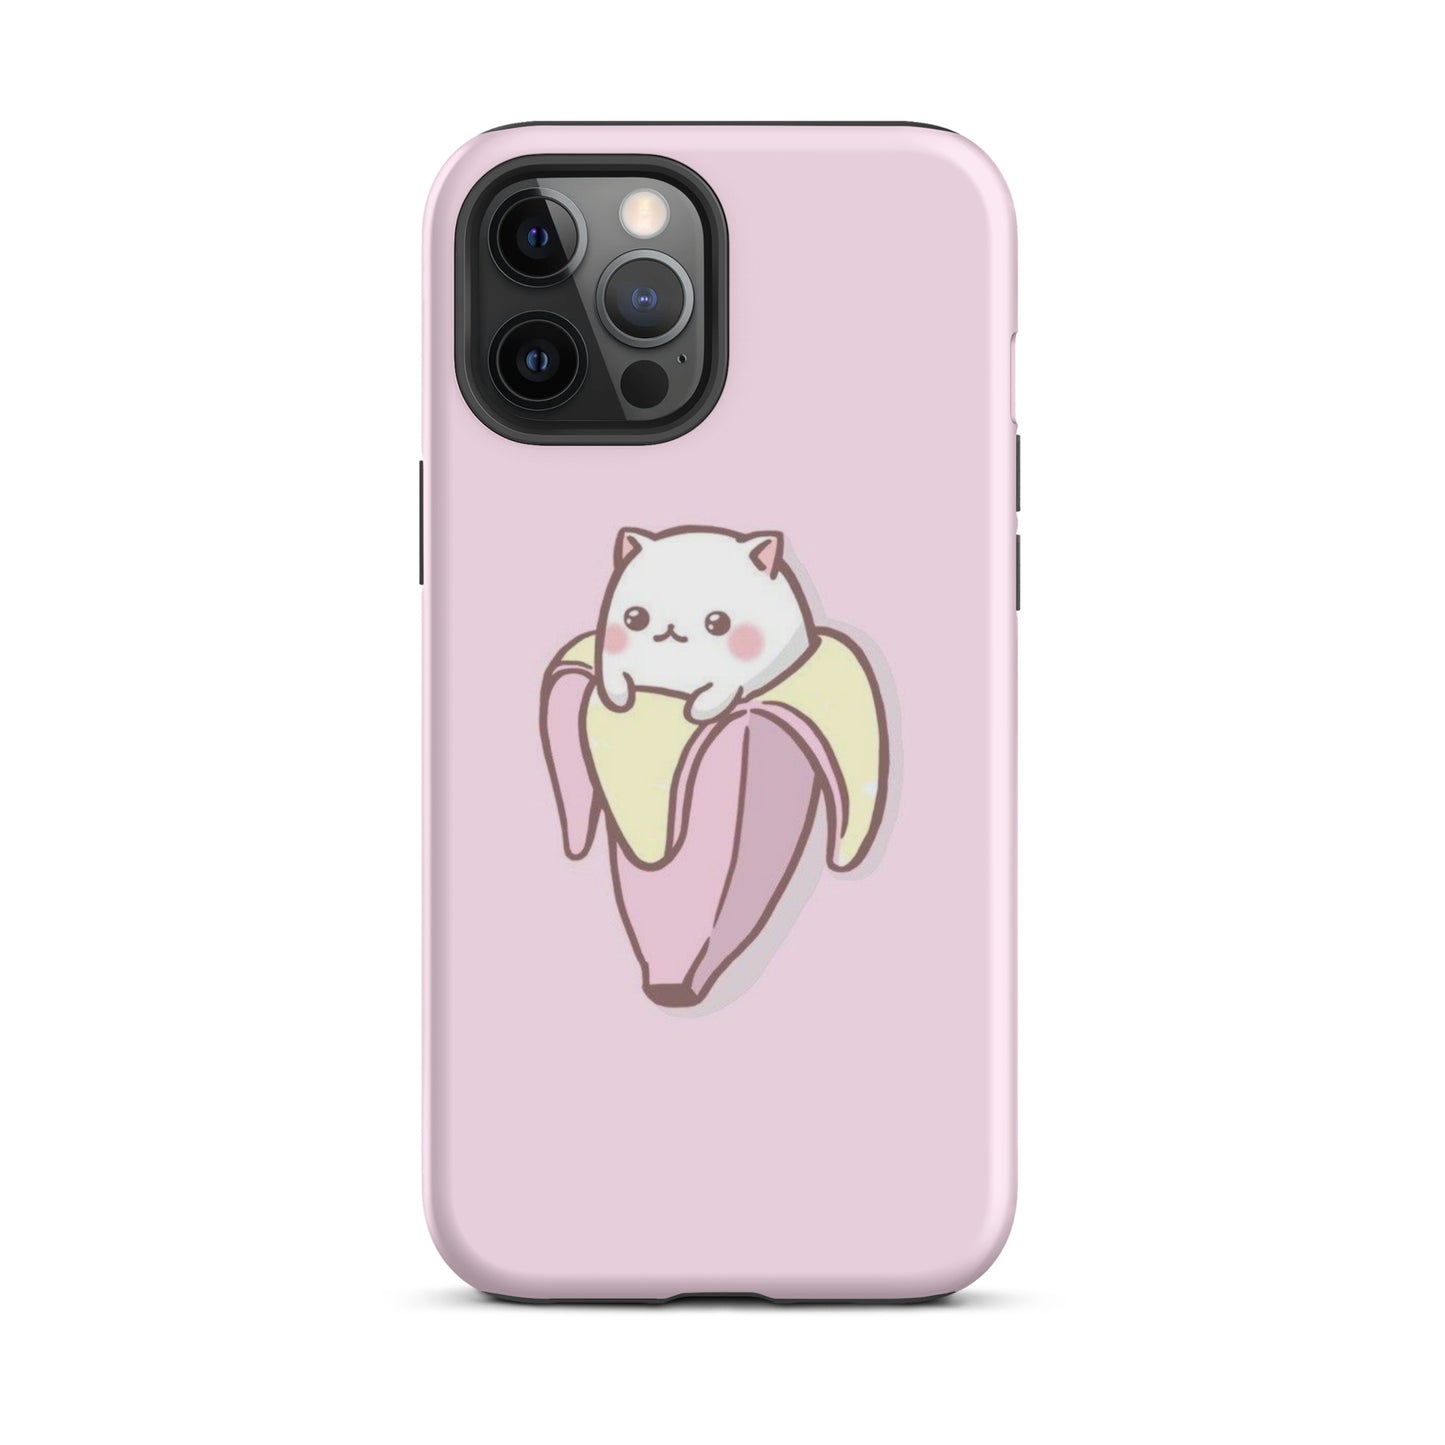 Kawaii - Cat going Bananas Tough Case for iPhone®